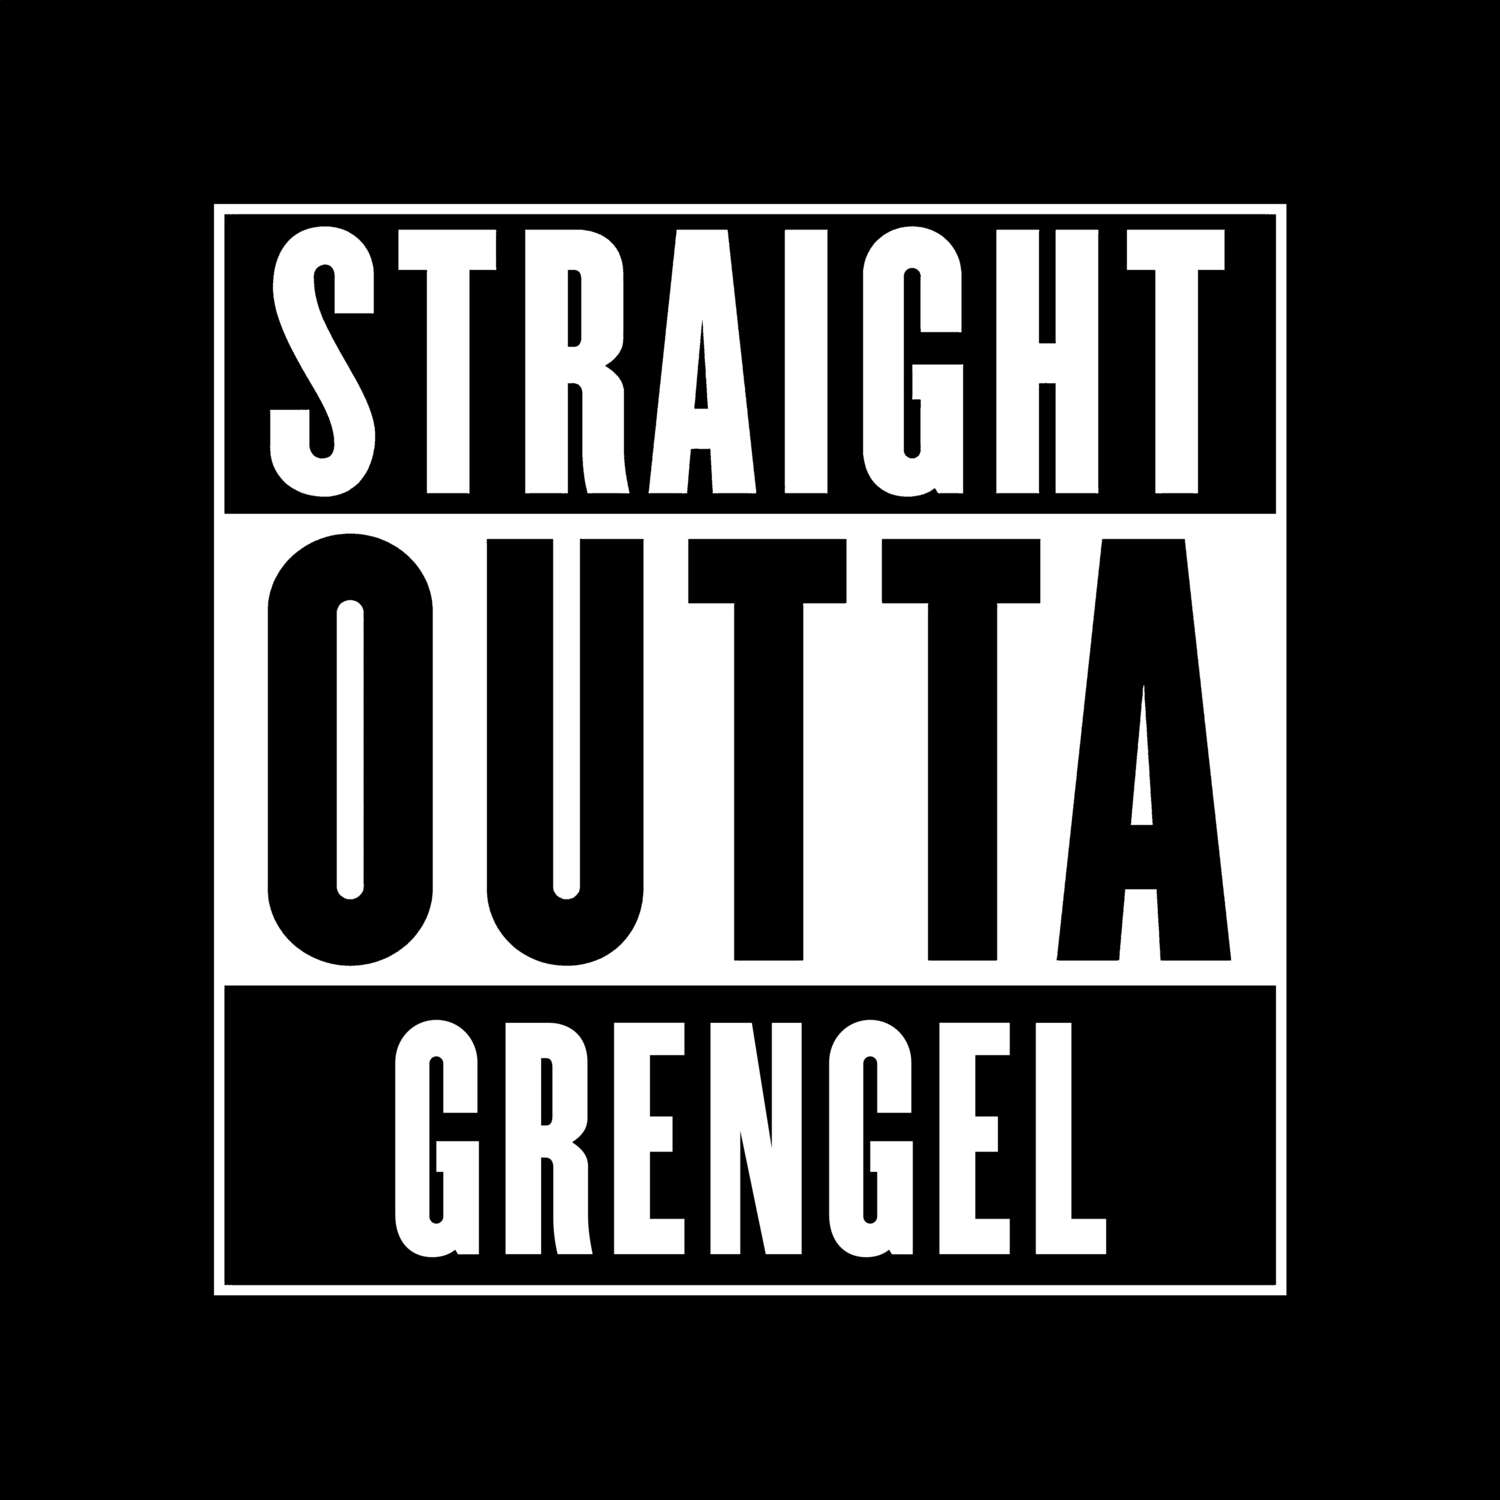 Grengel T-Shirt »Straight Outta«